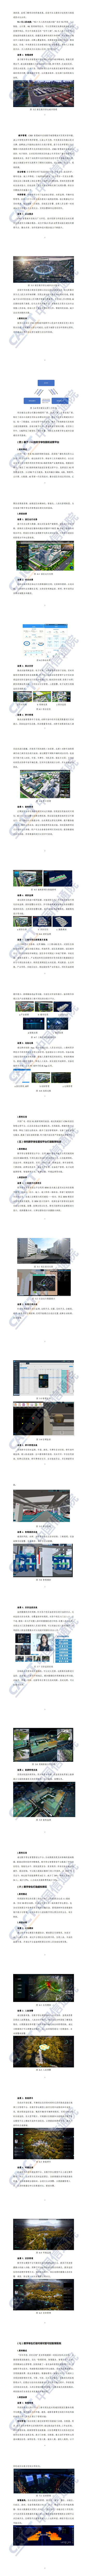 【中国信通院】数字孪生城市典型场景与应用案例（2020年）_1.jpg